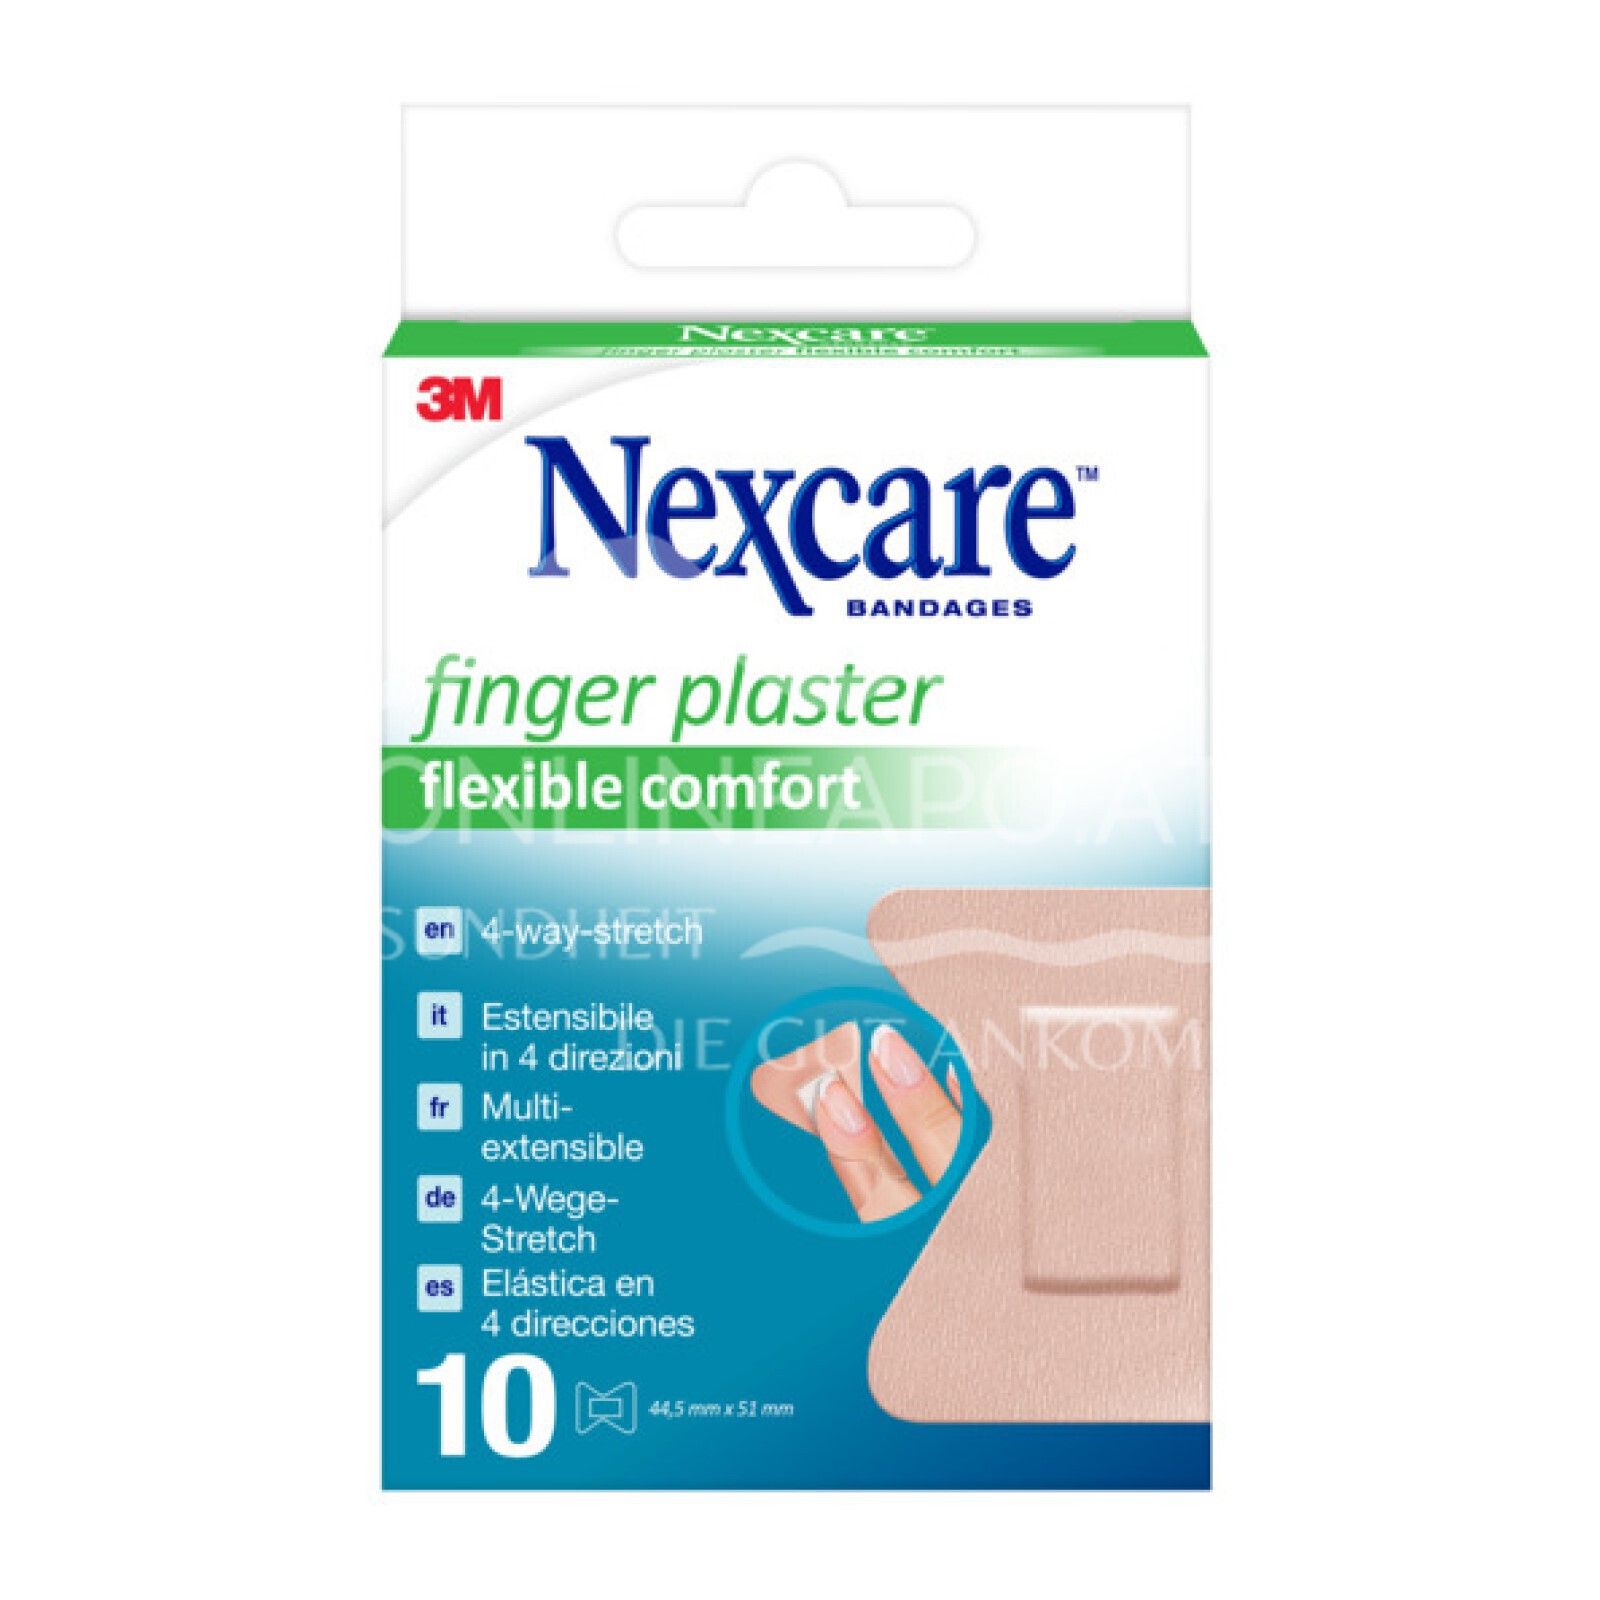 3M Nexcare™ Fingerpflaster Comfort Flexible, 44,5 x 51 mm